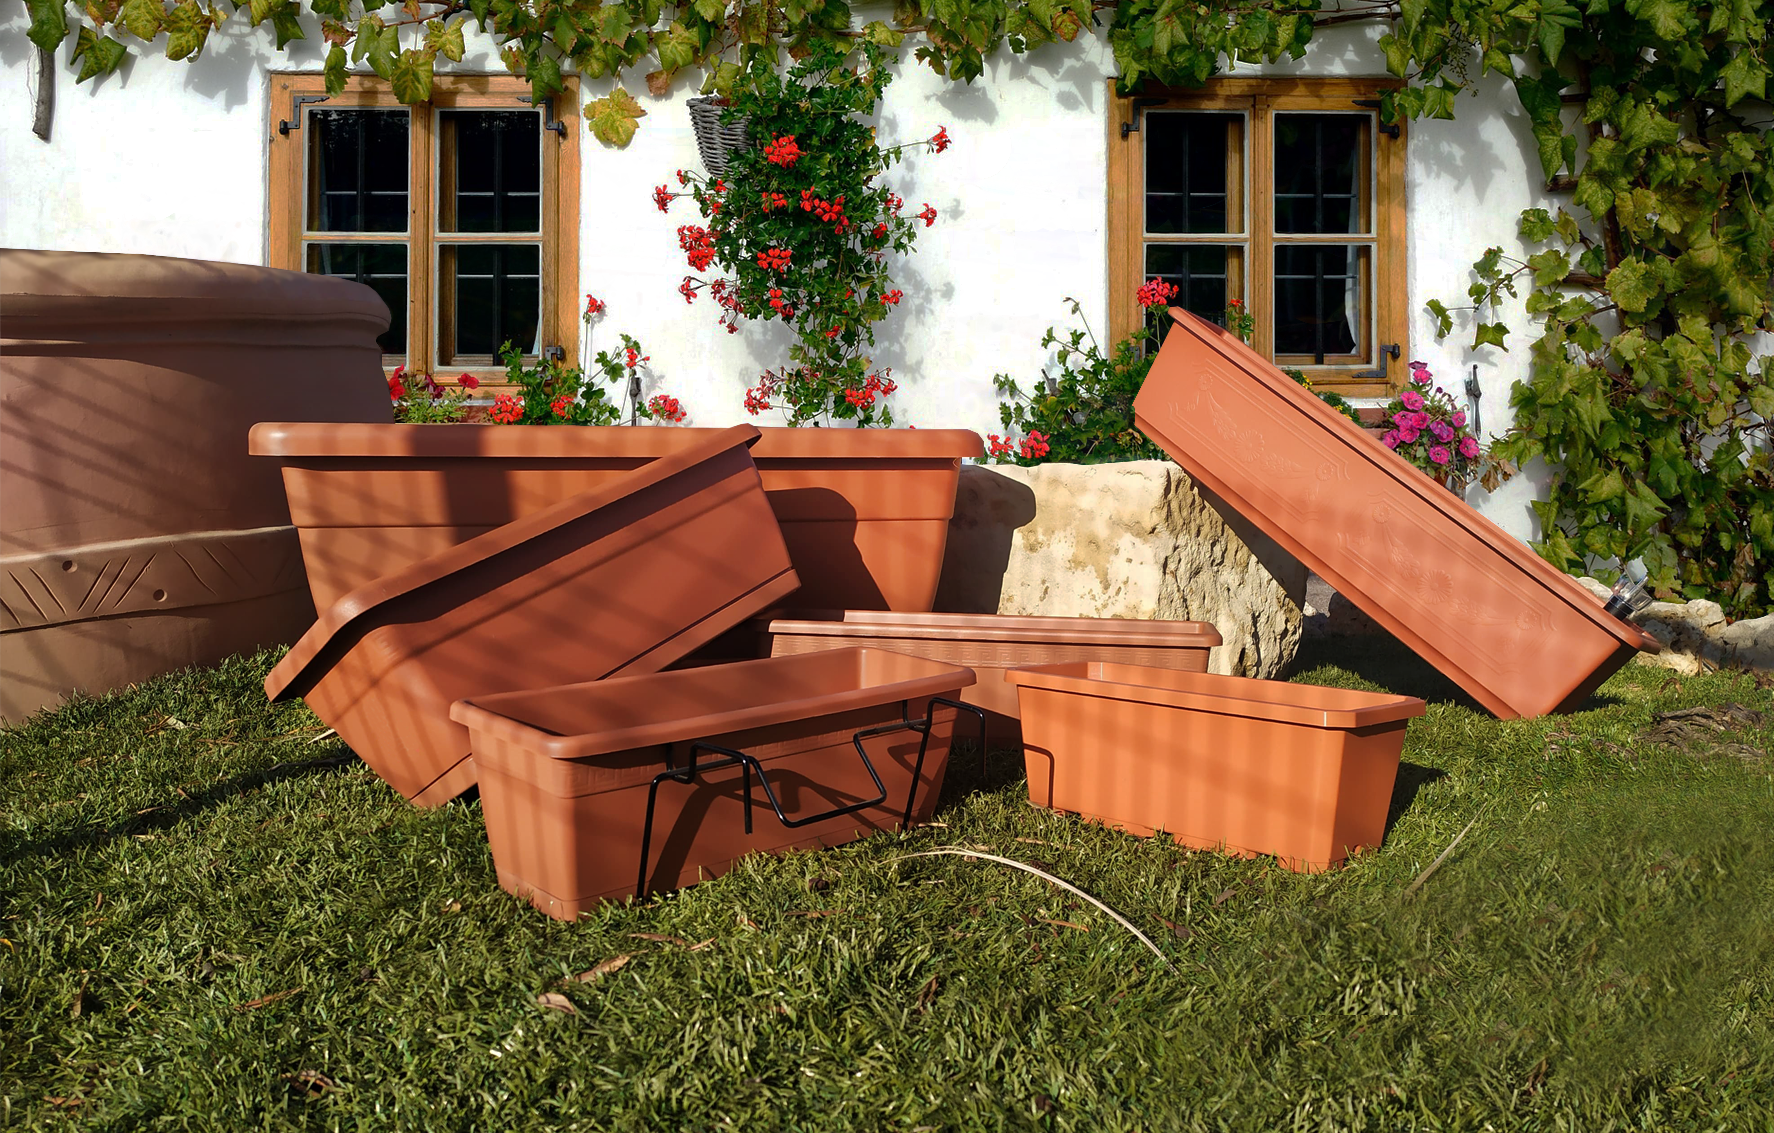 Decora tu terraza con nuestras jardineras rectangulares decorativas